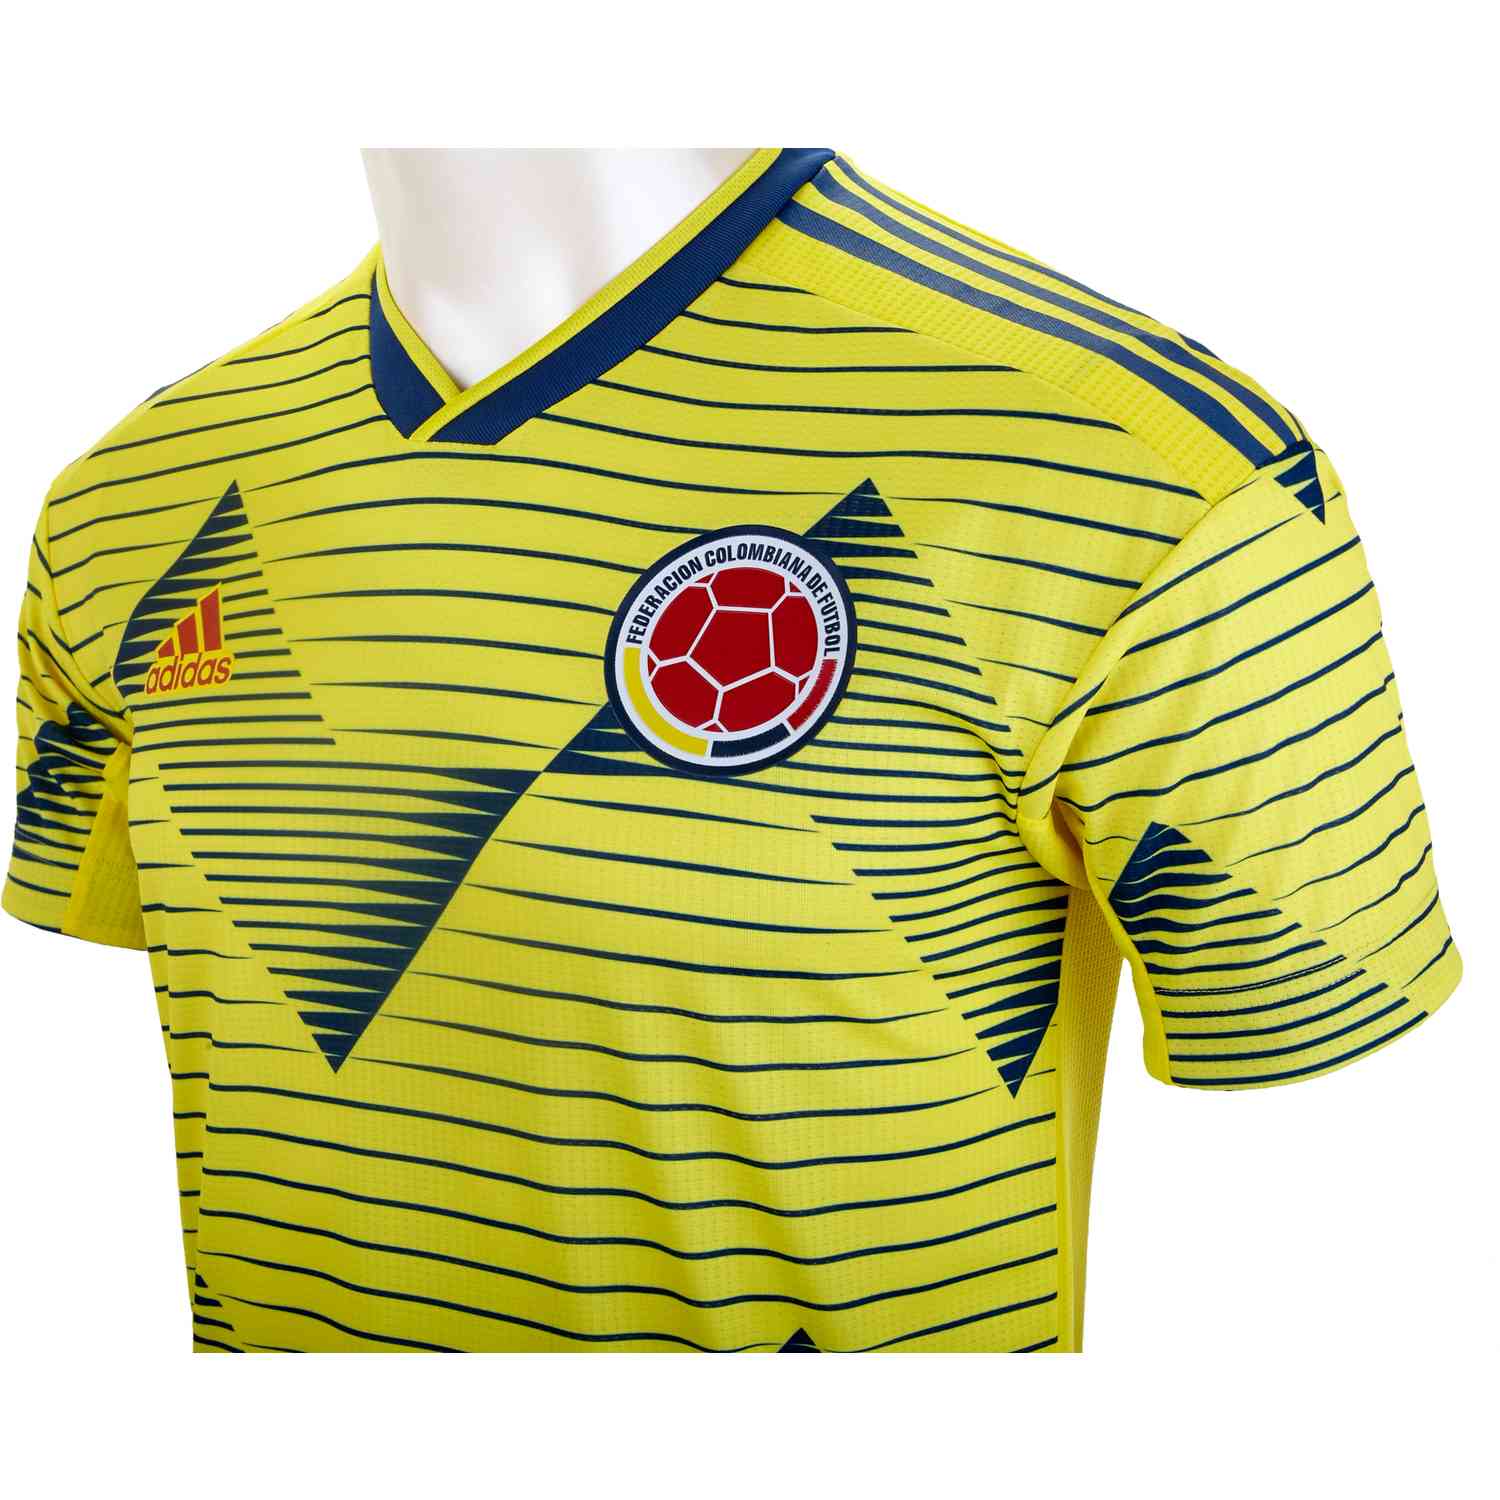 Emociónate Nacarado avance 2019 adidas Colombia Home Authentic Jersey - SoccerPro